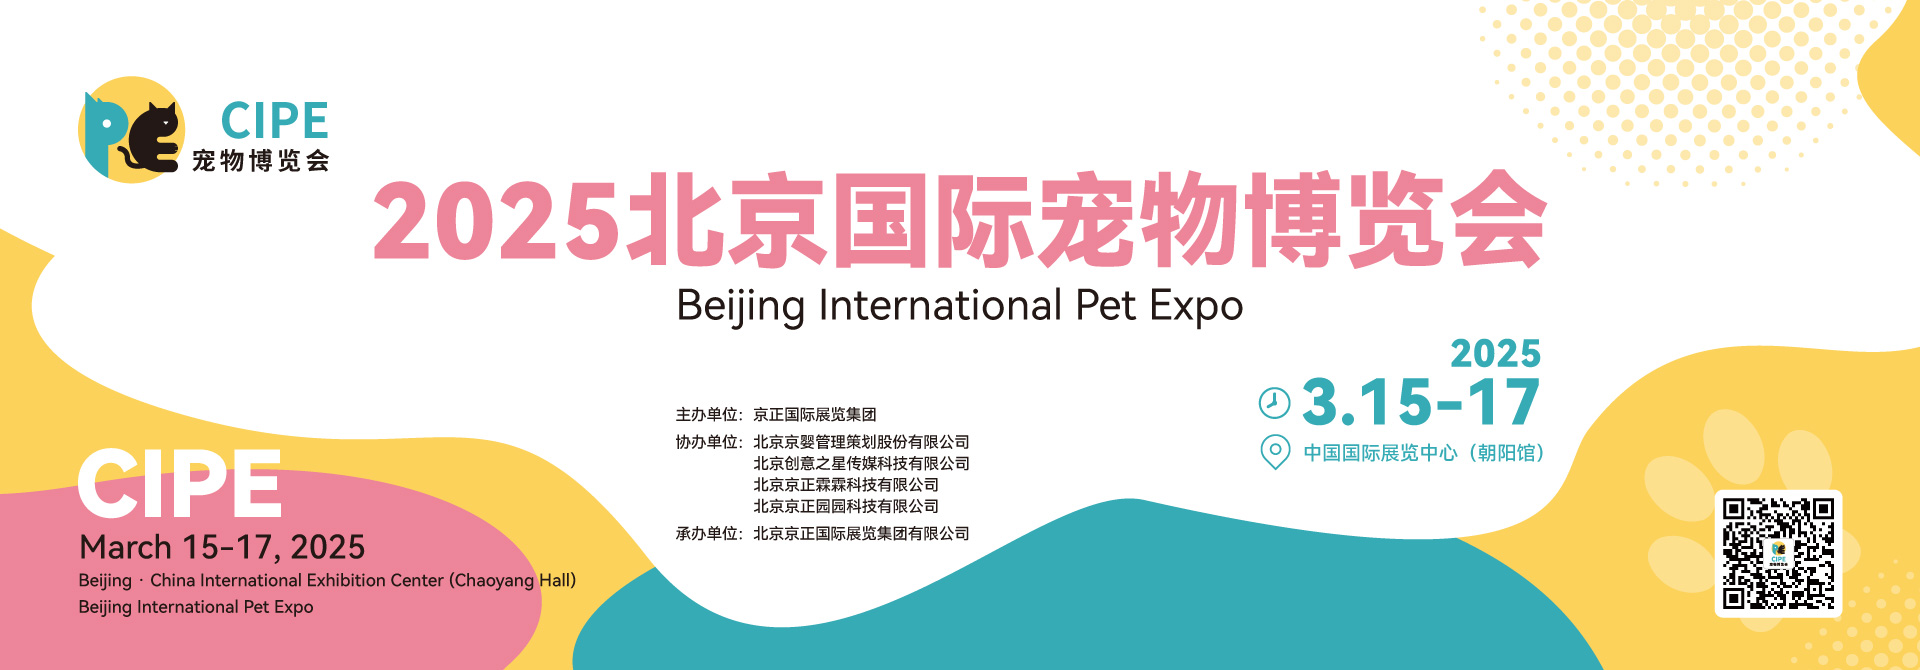 2025北京国际宠物博览会